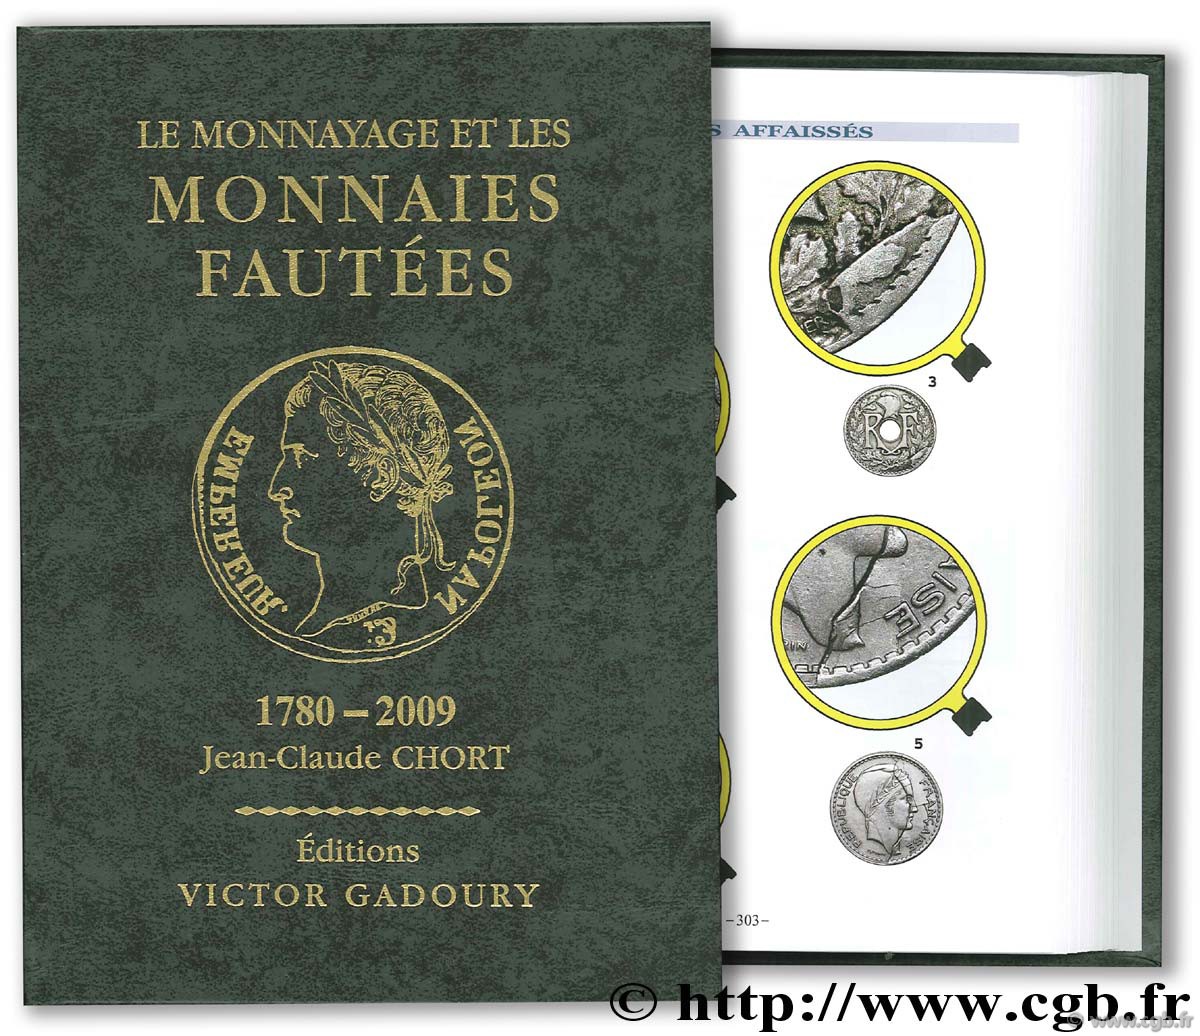 Le Monnayage et les Monnaies fautées 1789-2009 CHORT Jean-Claude